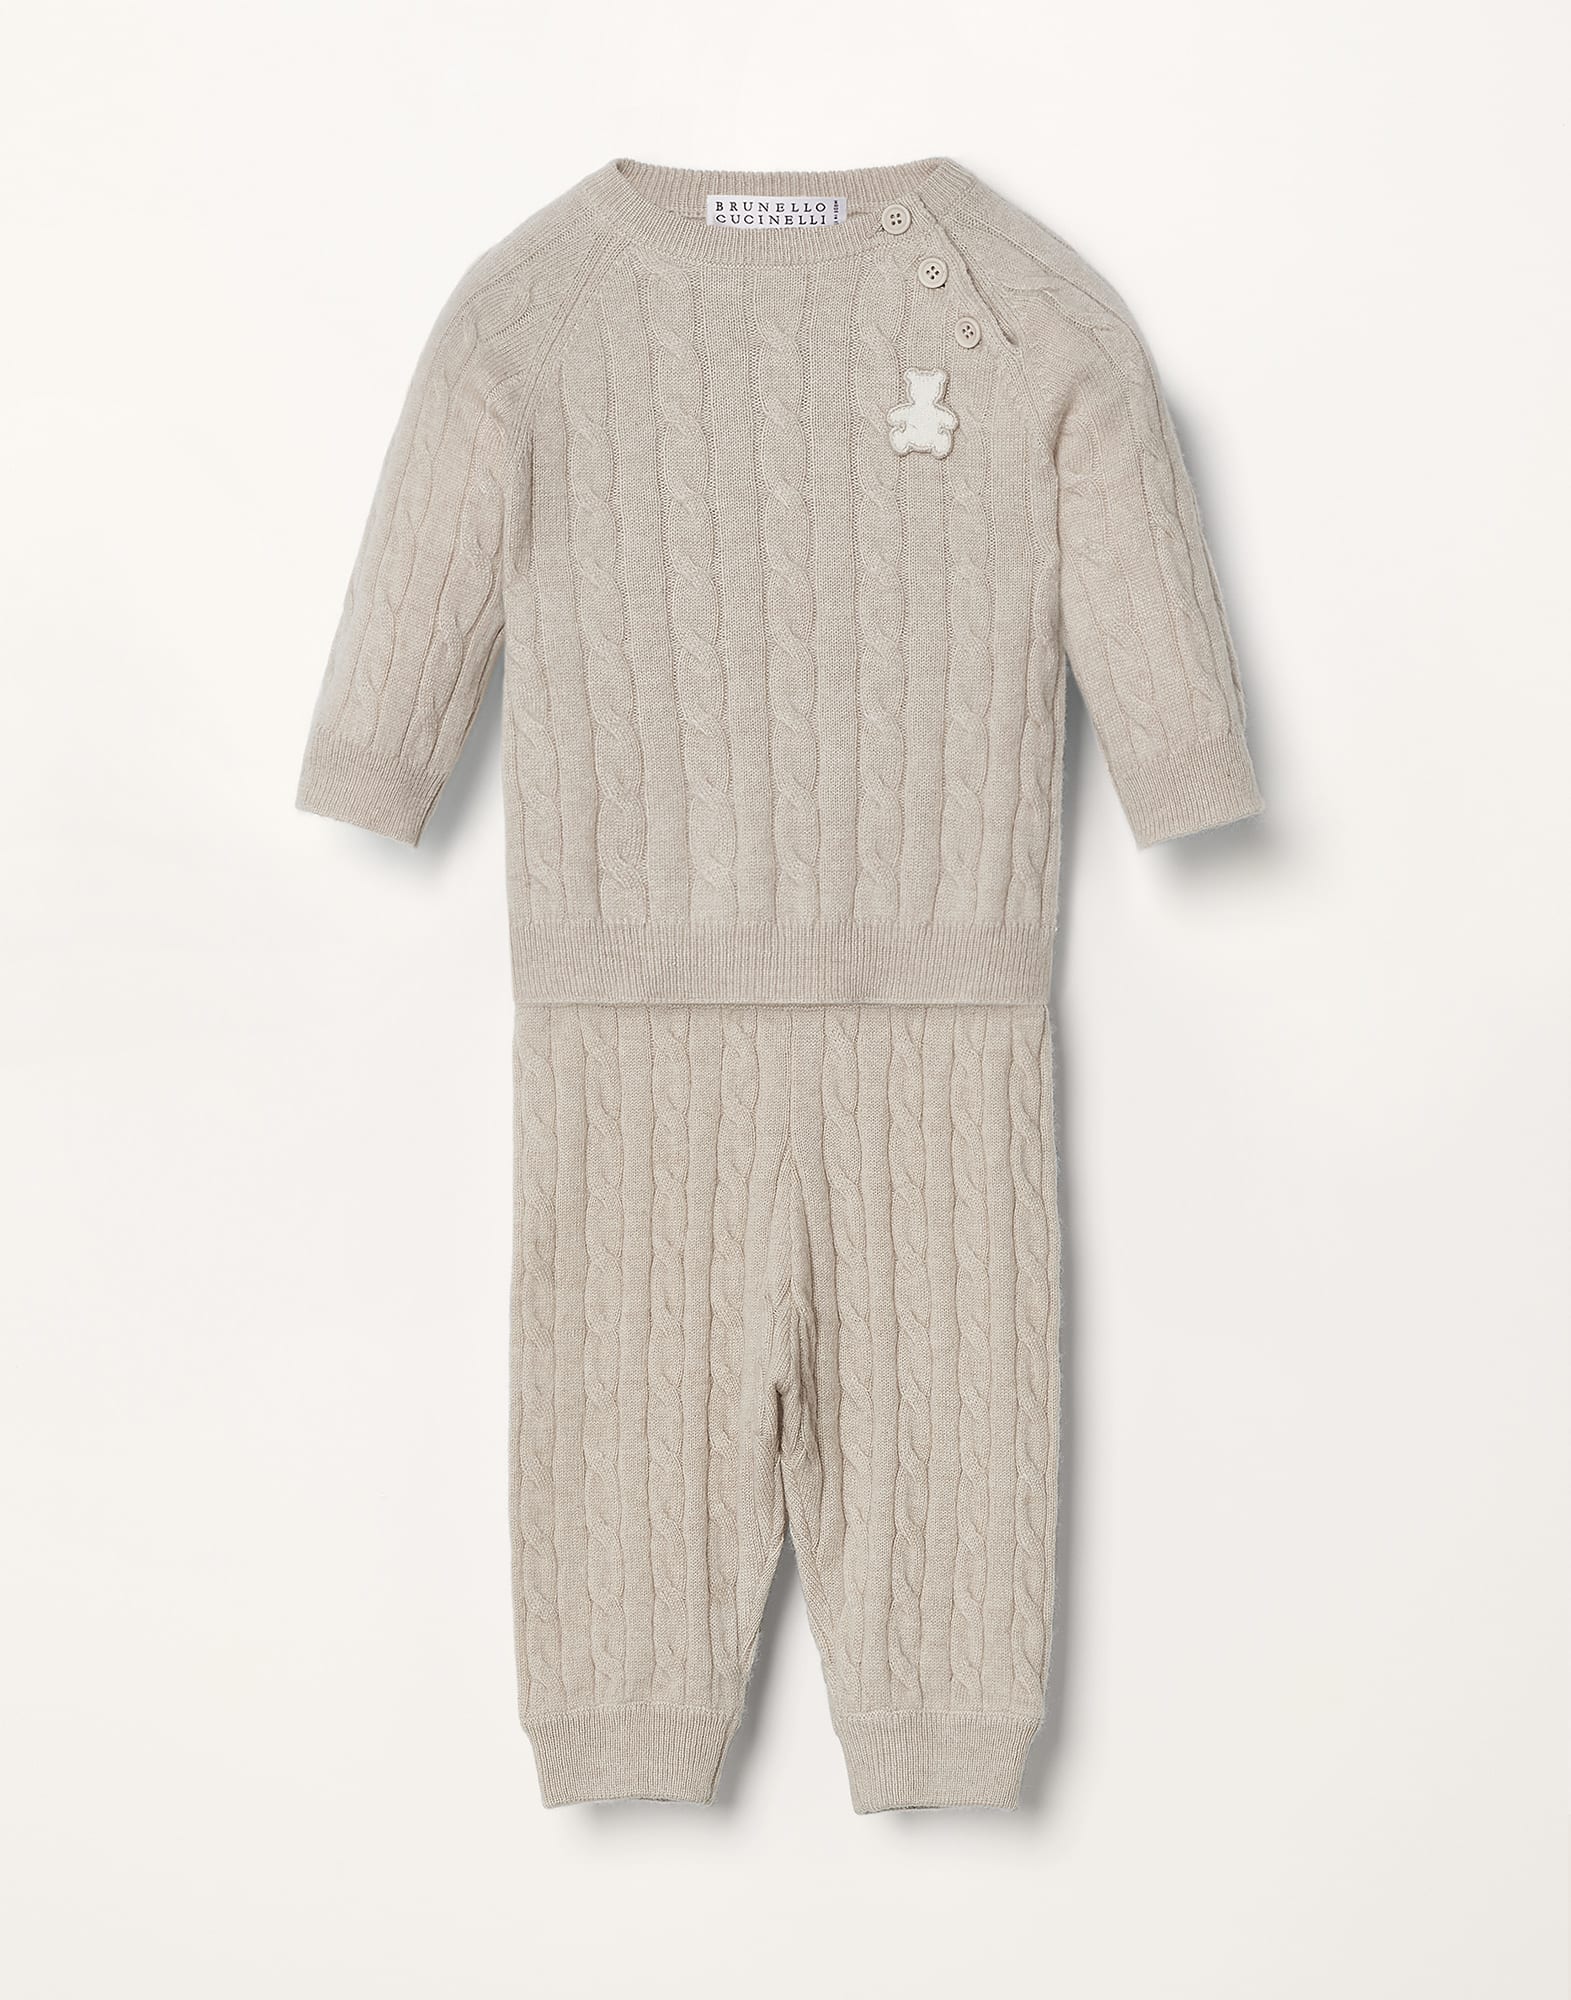 Cashmere Bernie sweater Sand Baby - Brunello Cucinelli